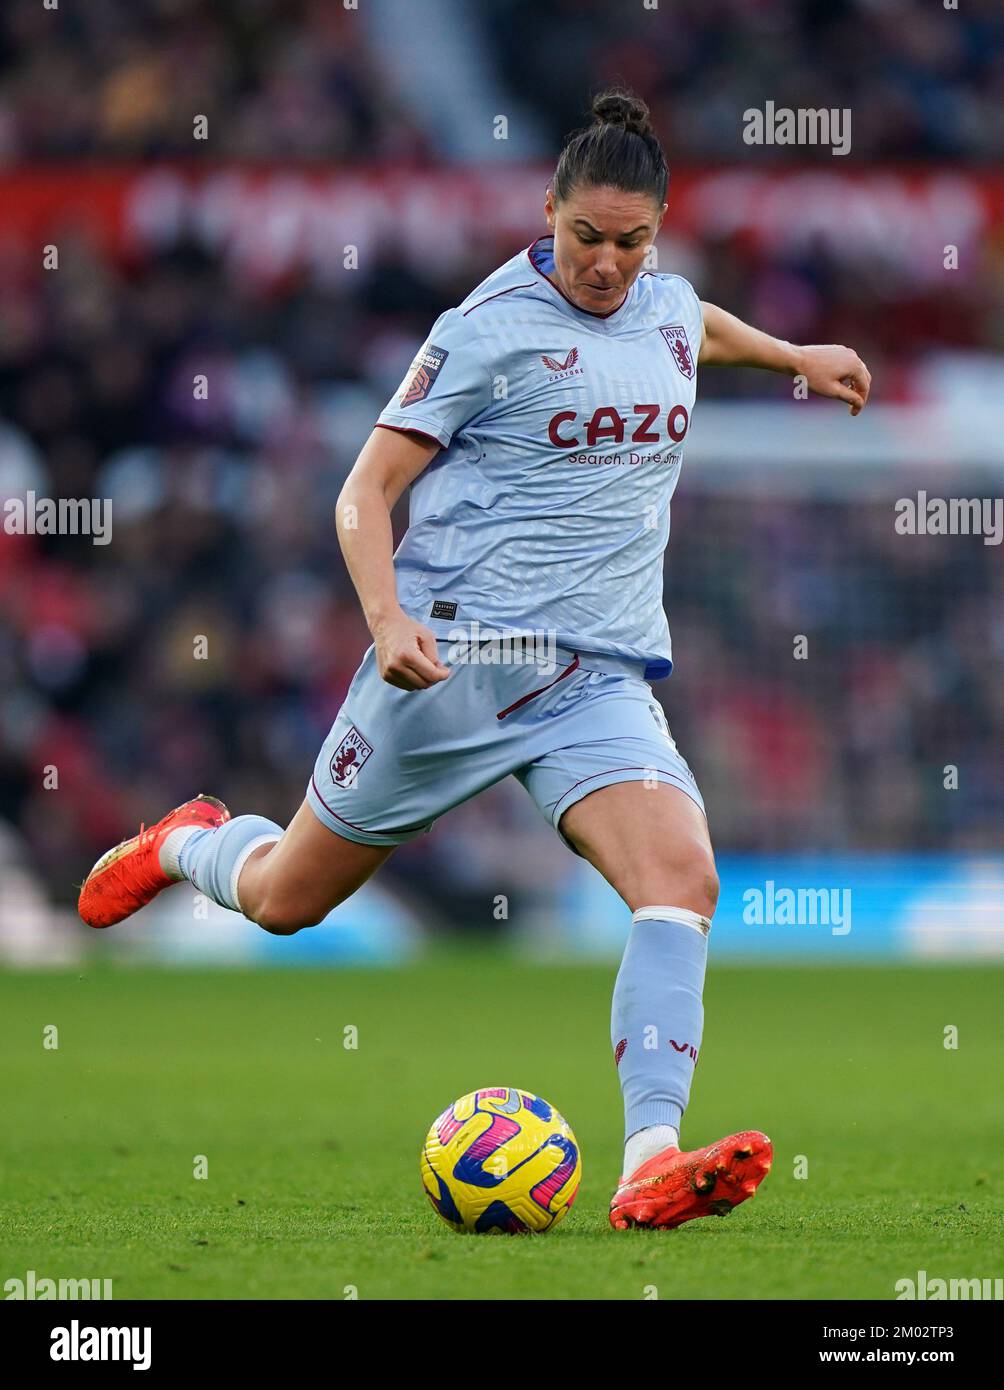 Emily Gielnik de Aston Villa durante el partido de la Superliga Femenina Barclays en Old Trafford, Manchester. Fecha de la foto: Sábado 3 de diciembre de 2022. Foto de stock